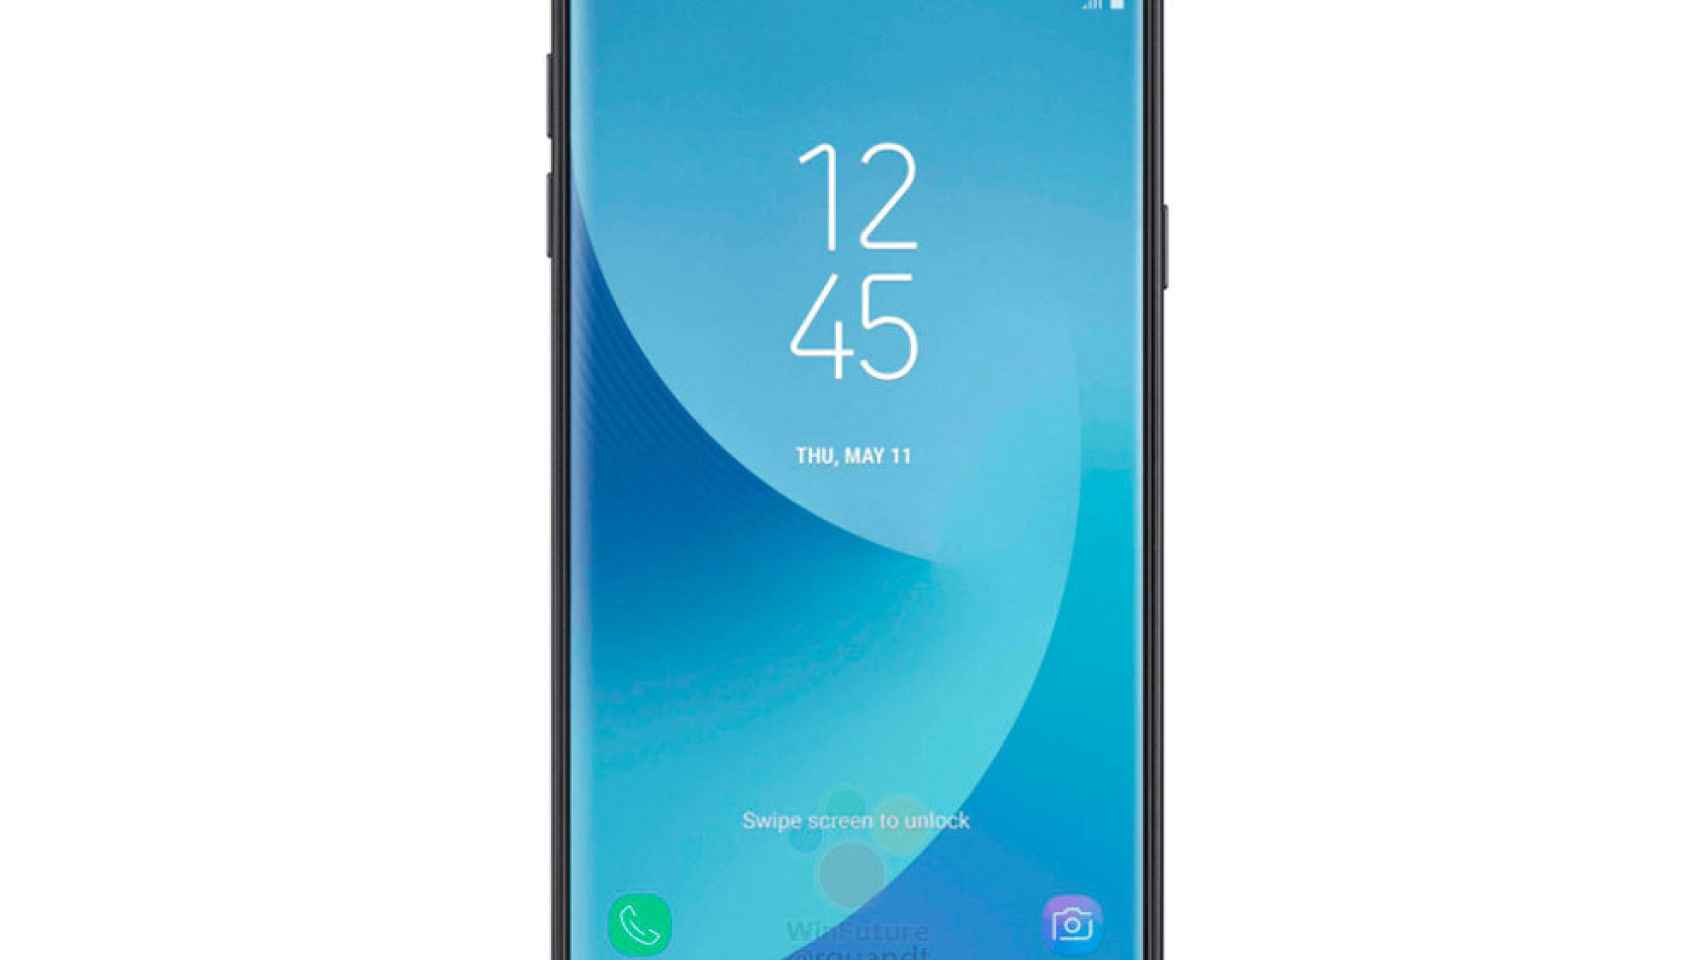 El Samsung Galaxy J5 2017 se filtra: así es su diseño y características